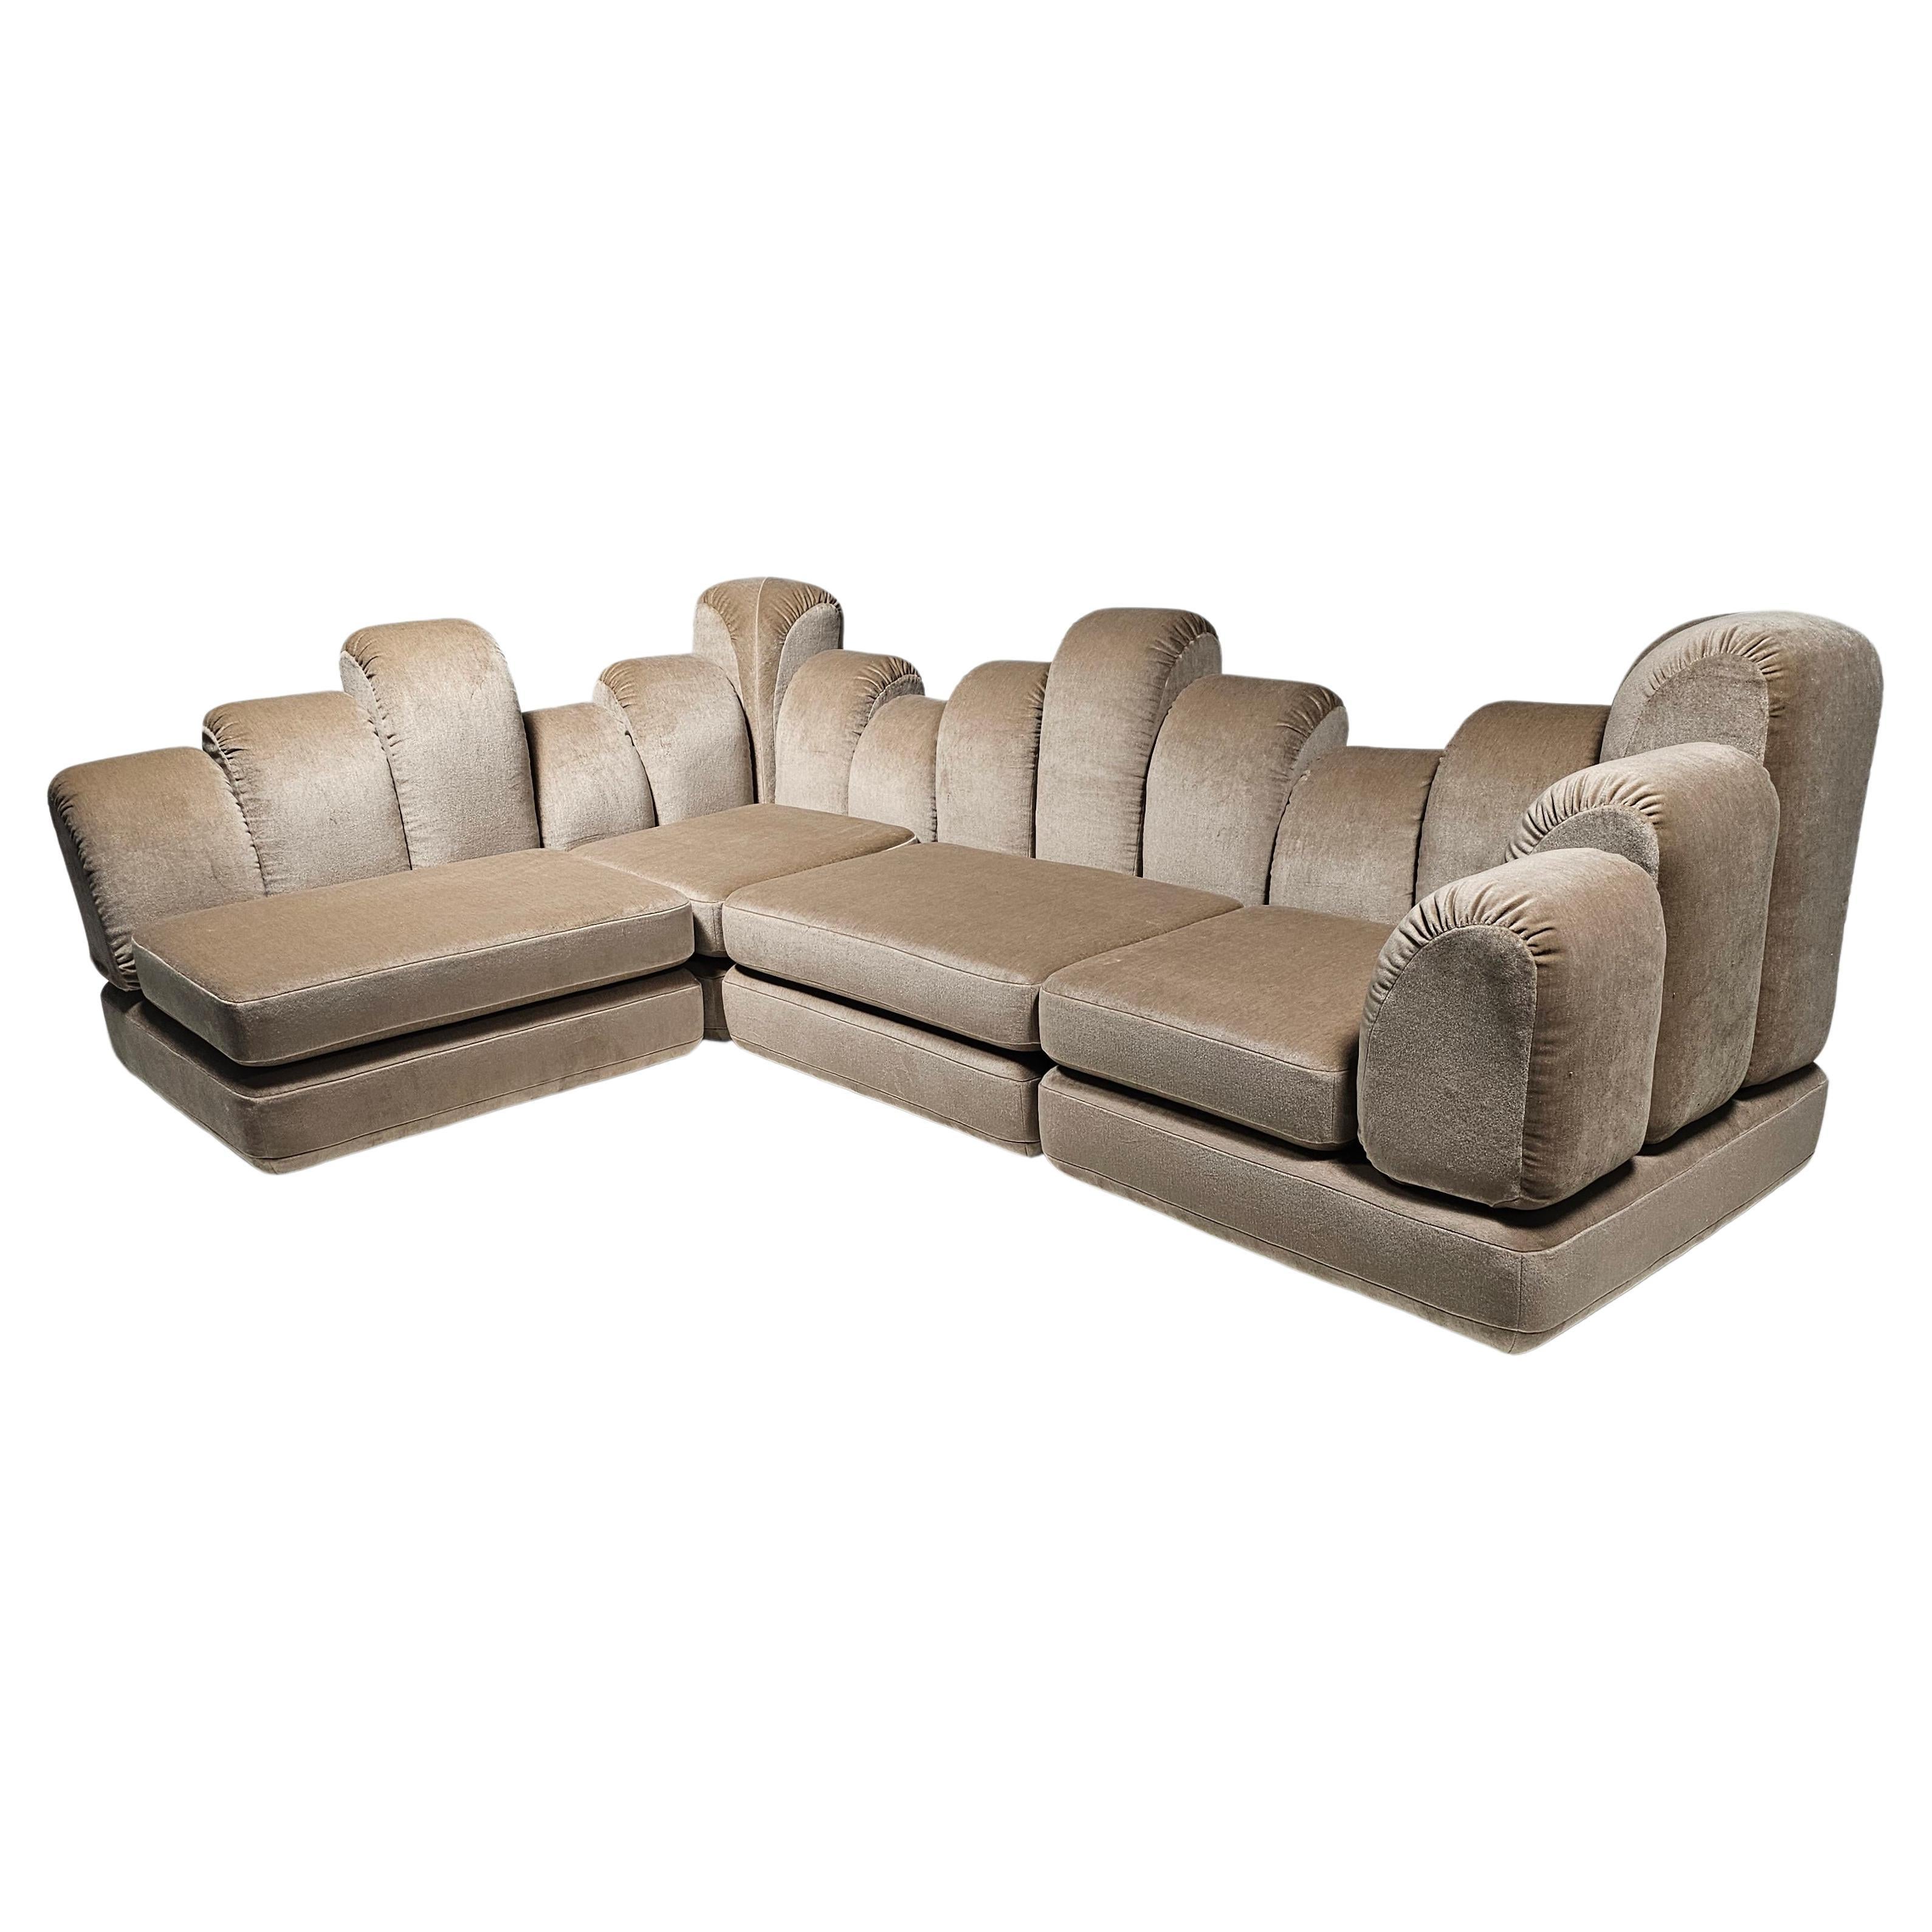 Hans Hopfer 'Dromadaire' Sectional Sofa in beige mohair velvet, Roche Bobois For Sale